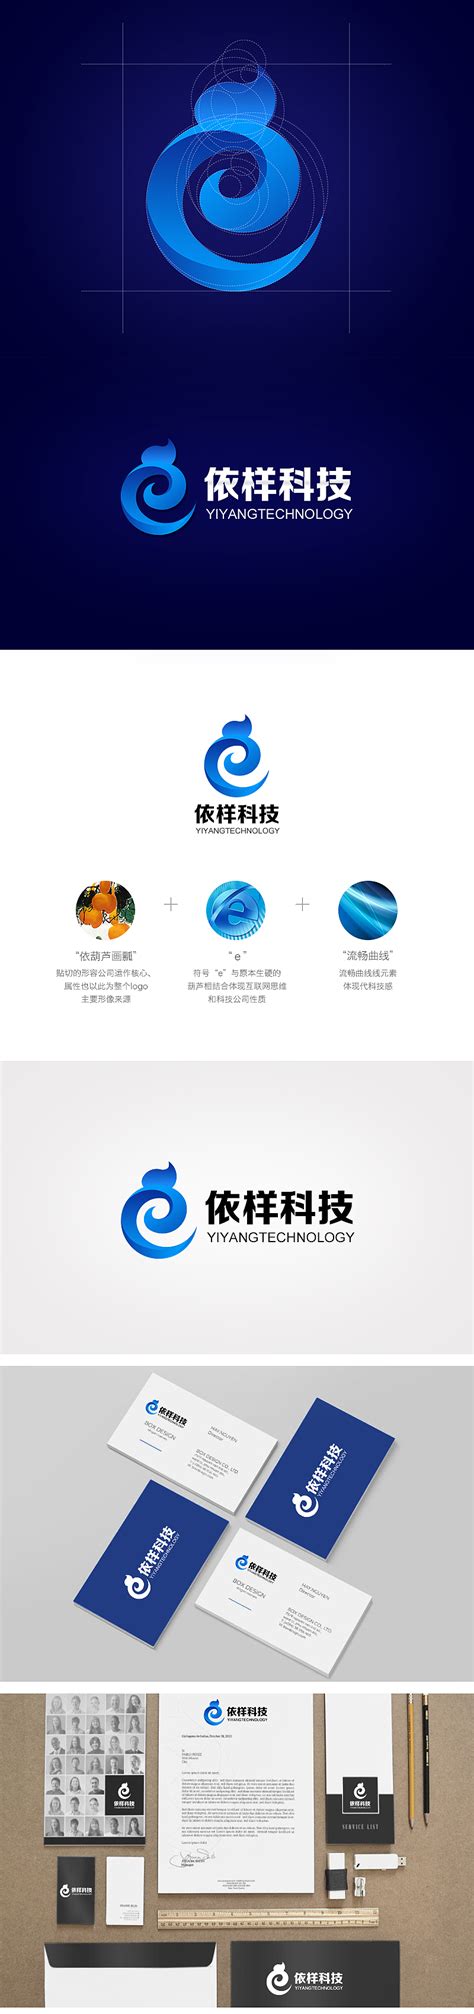 辽宁科技大学校徽logo矢量标志素材 - 设计无忧网